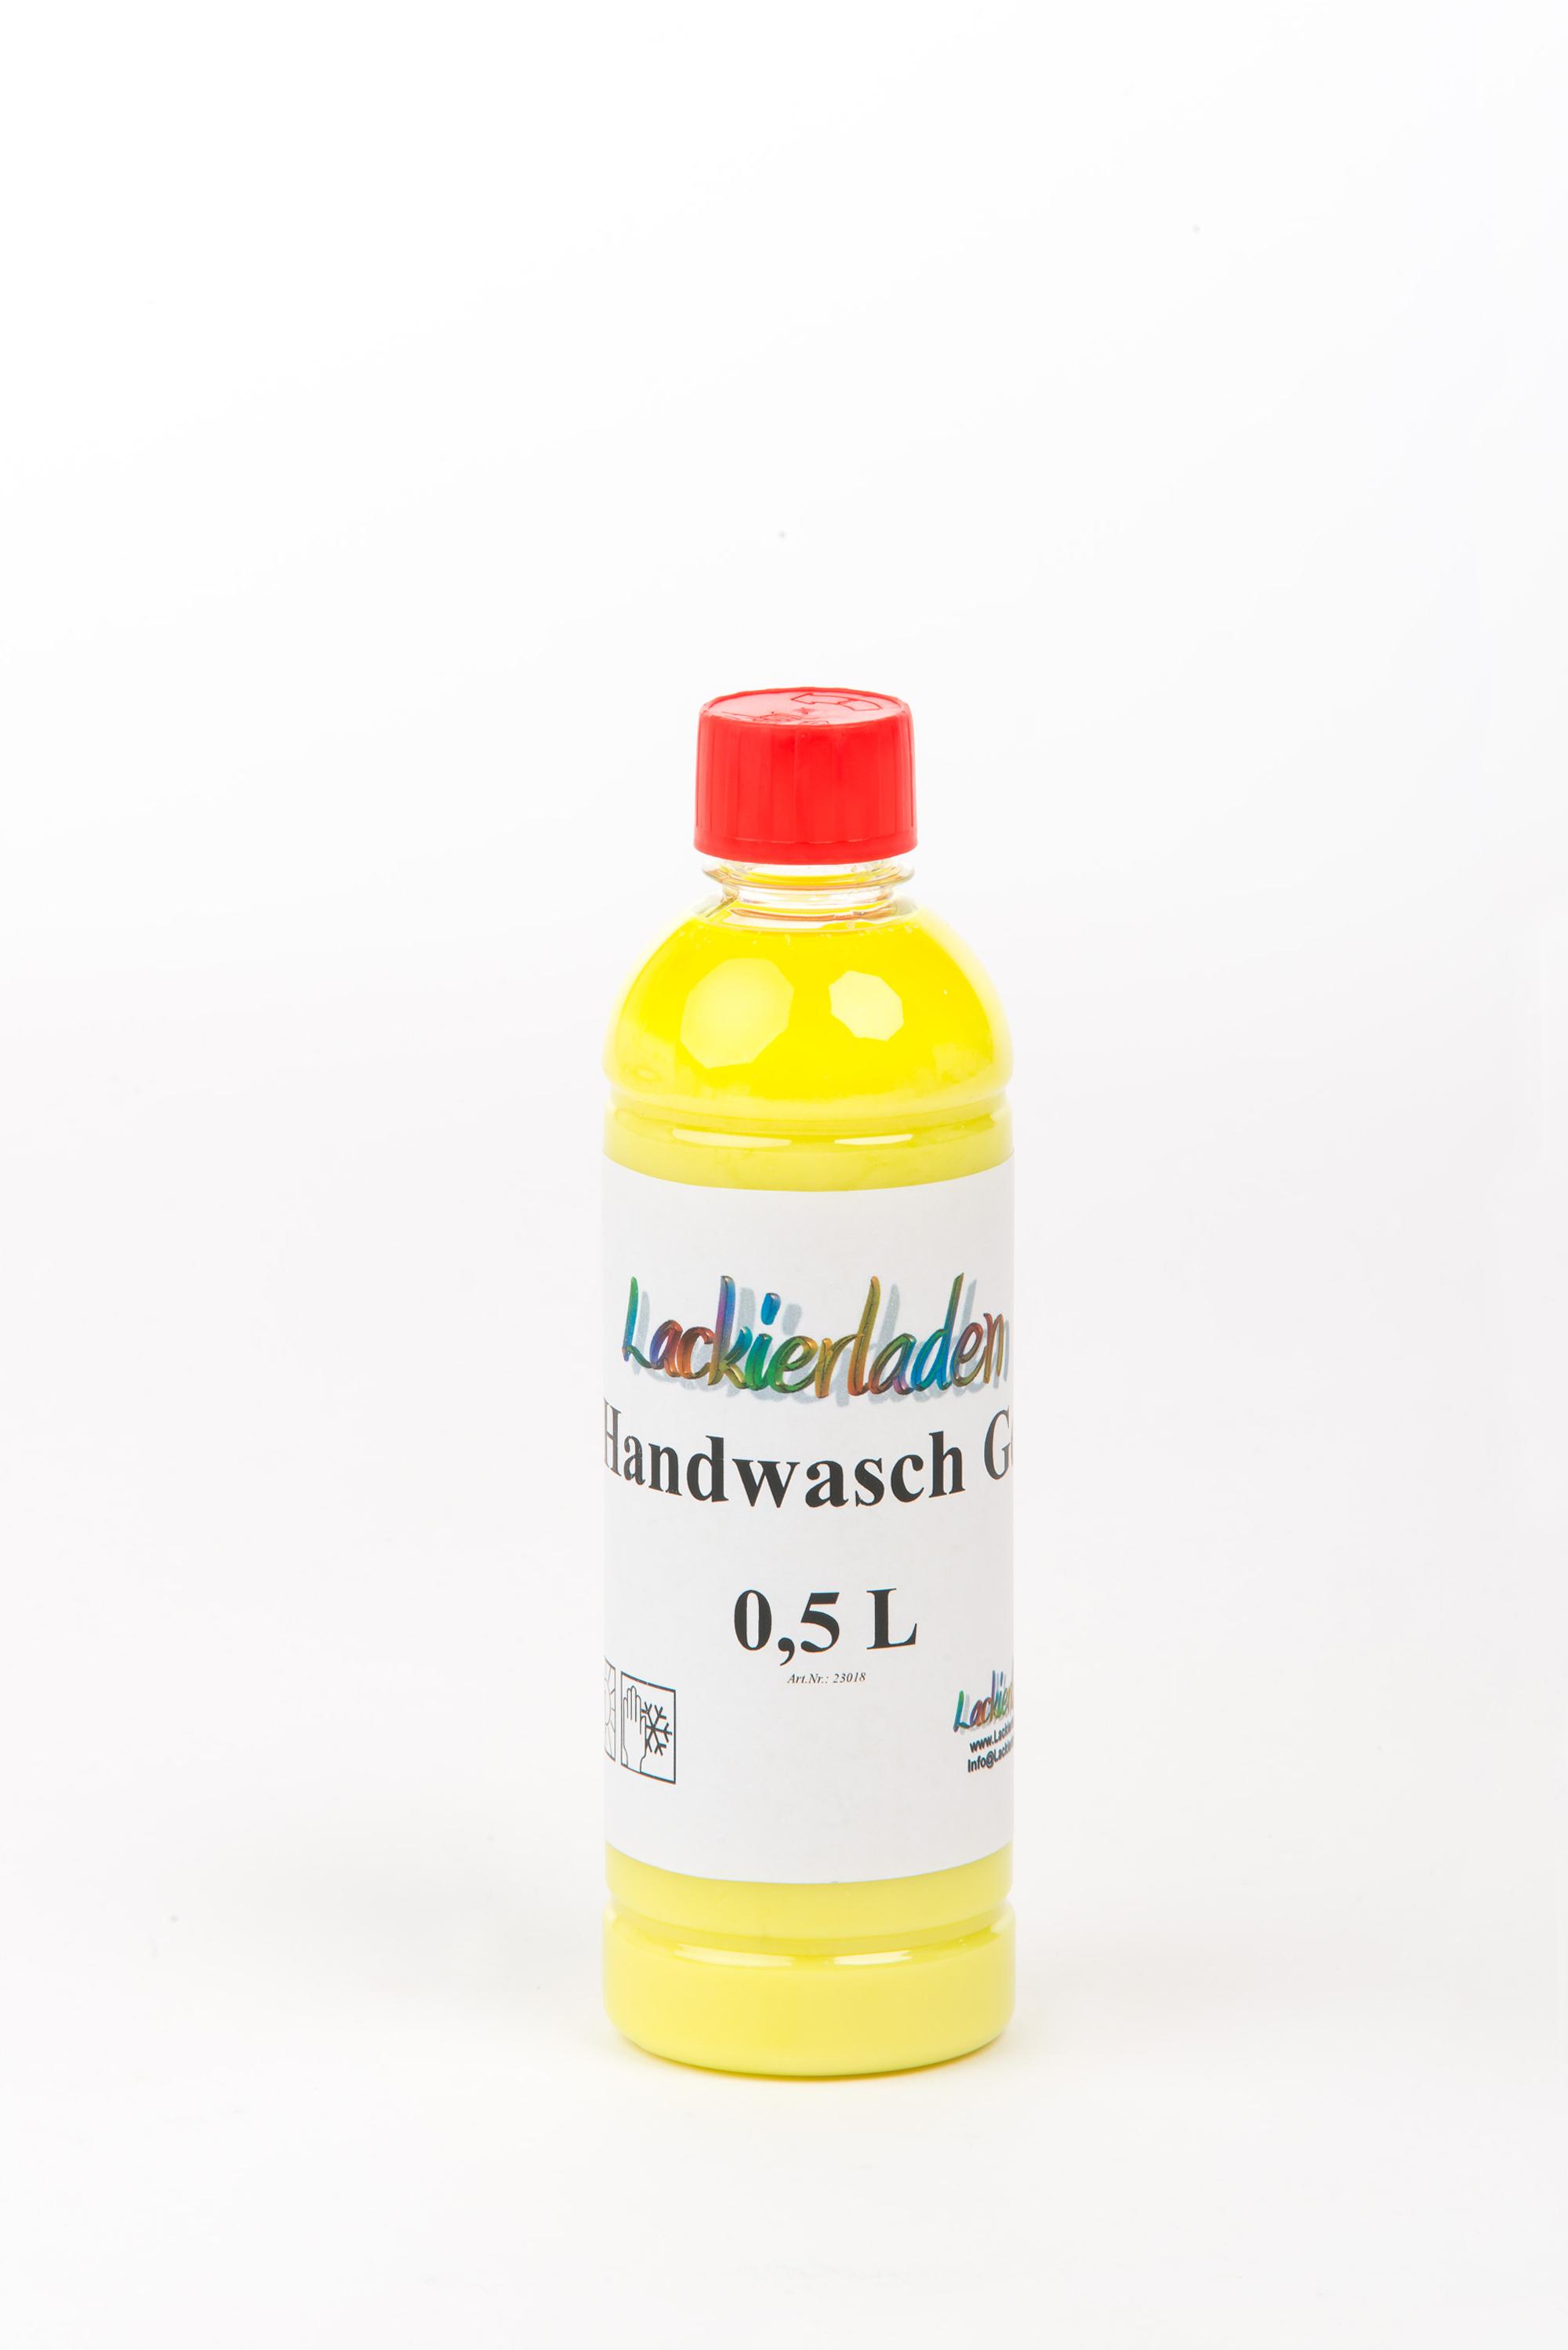 Lackierladen Handwasch Gel mit Reibemitteln 0,5 L | 500 ml reinigen waschen Hände